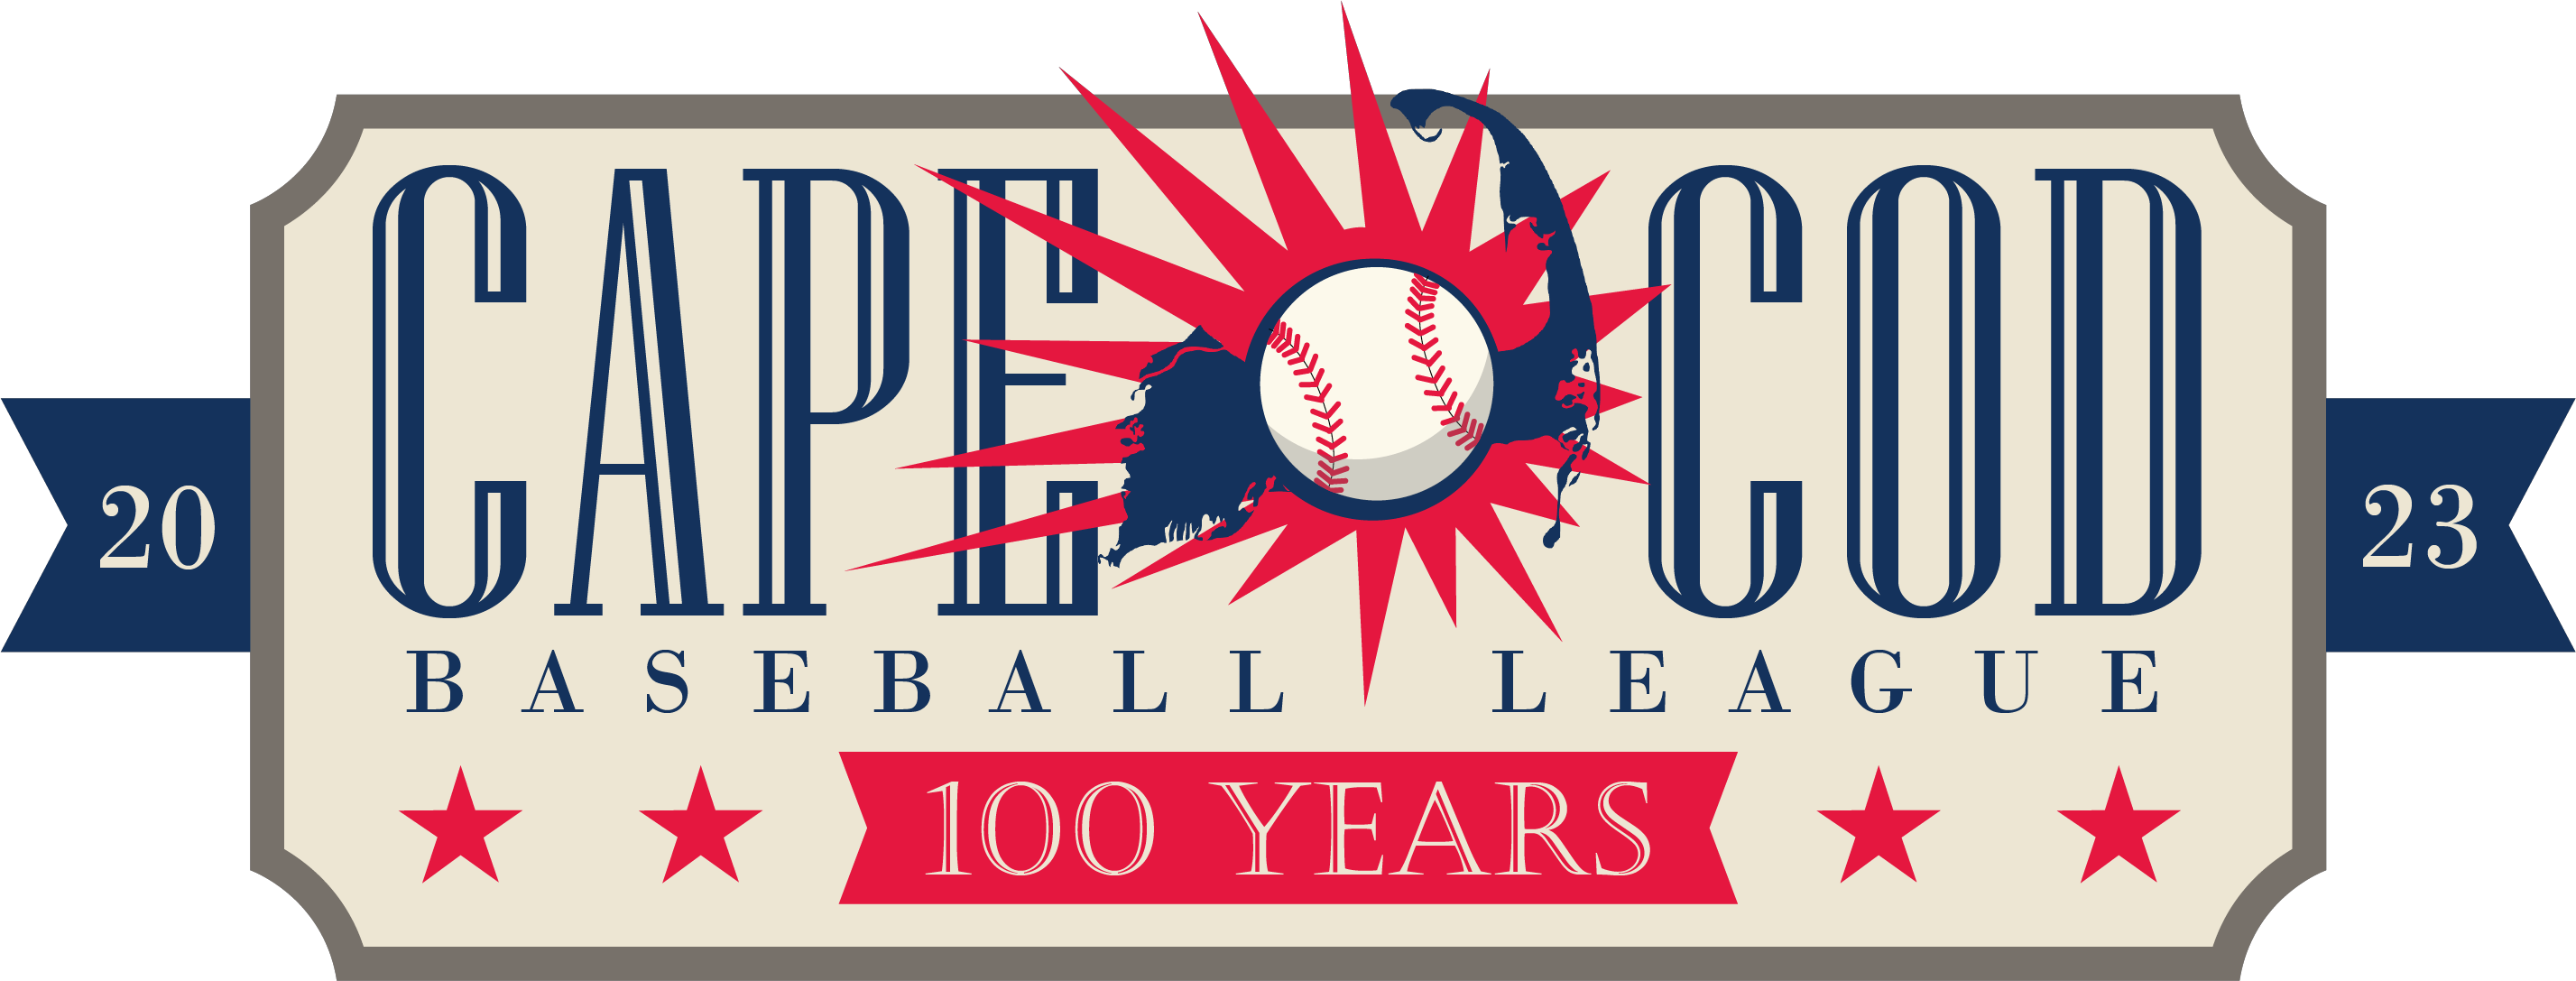 Cape Cod Baseball League Weekly Season News